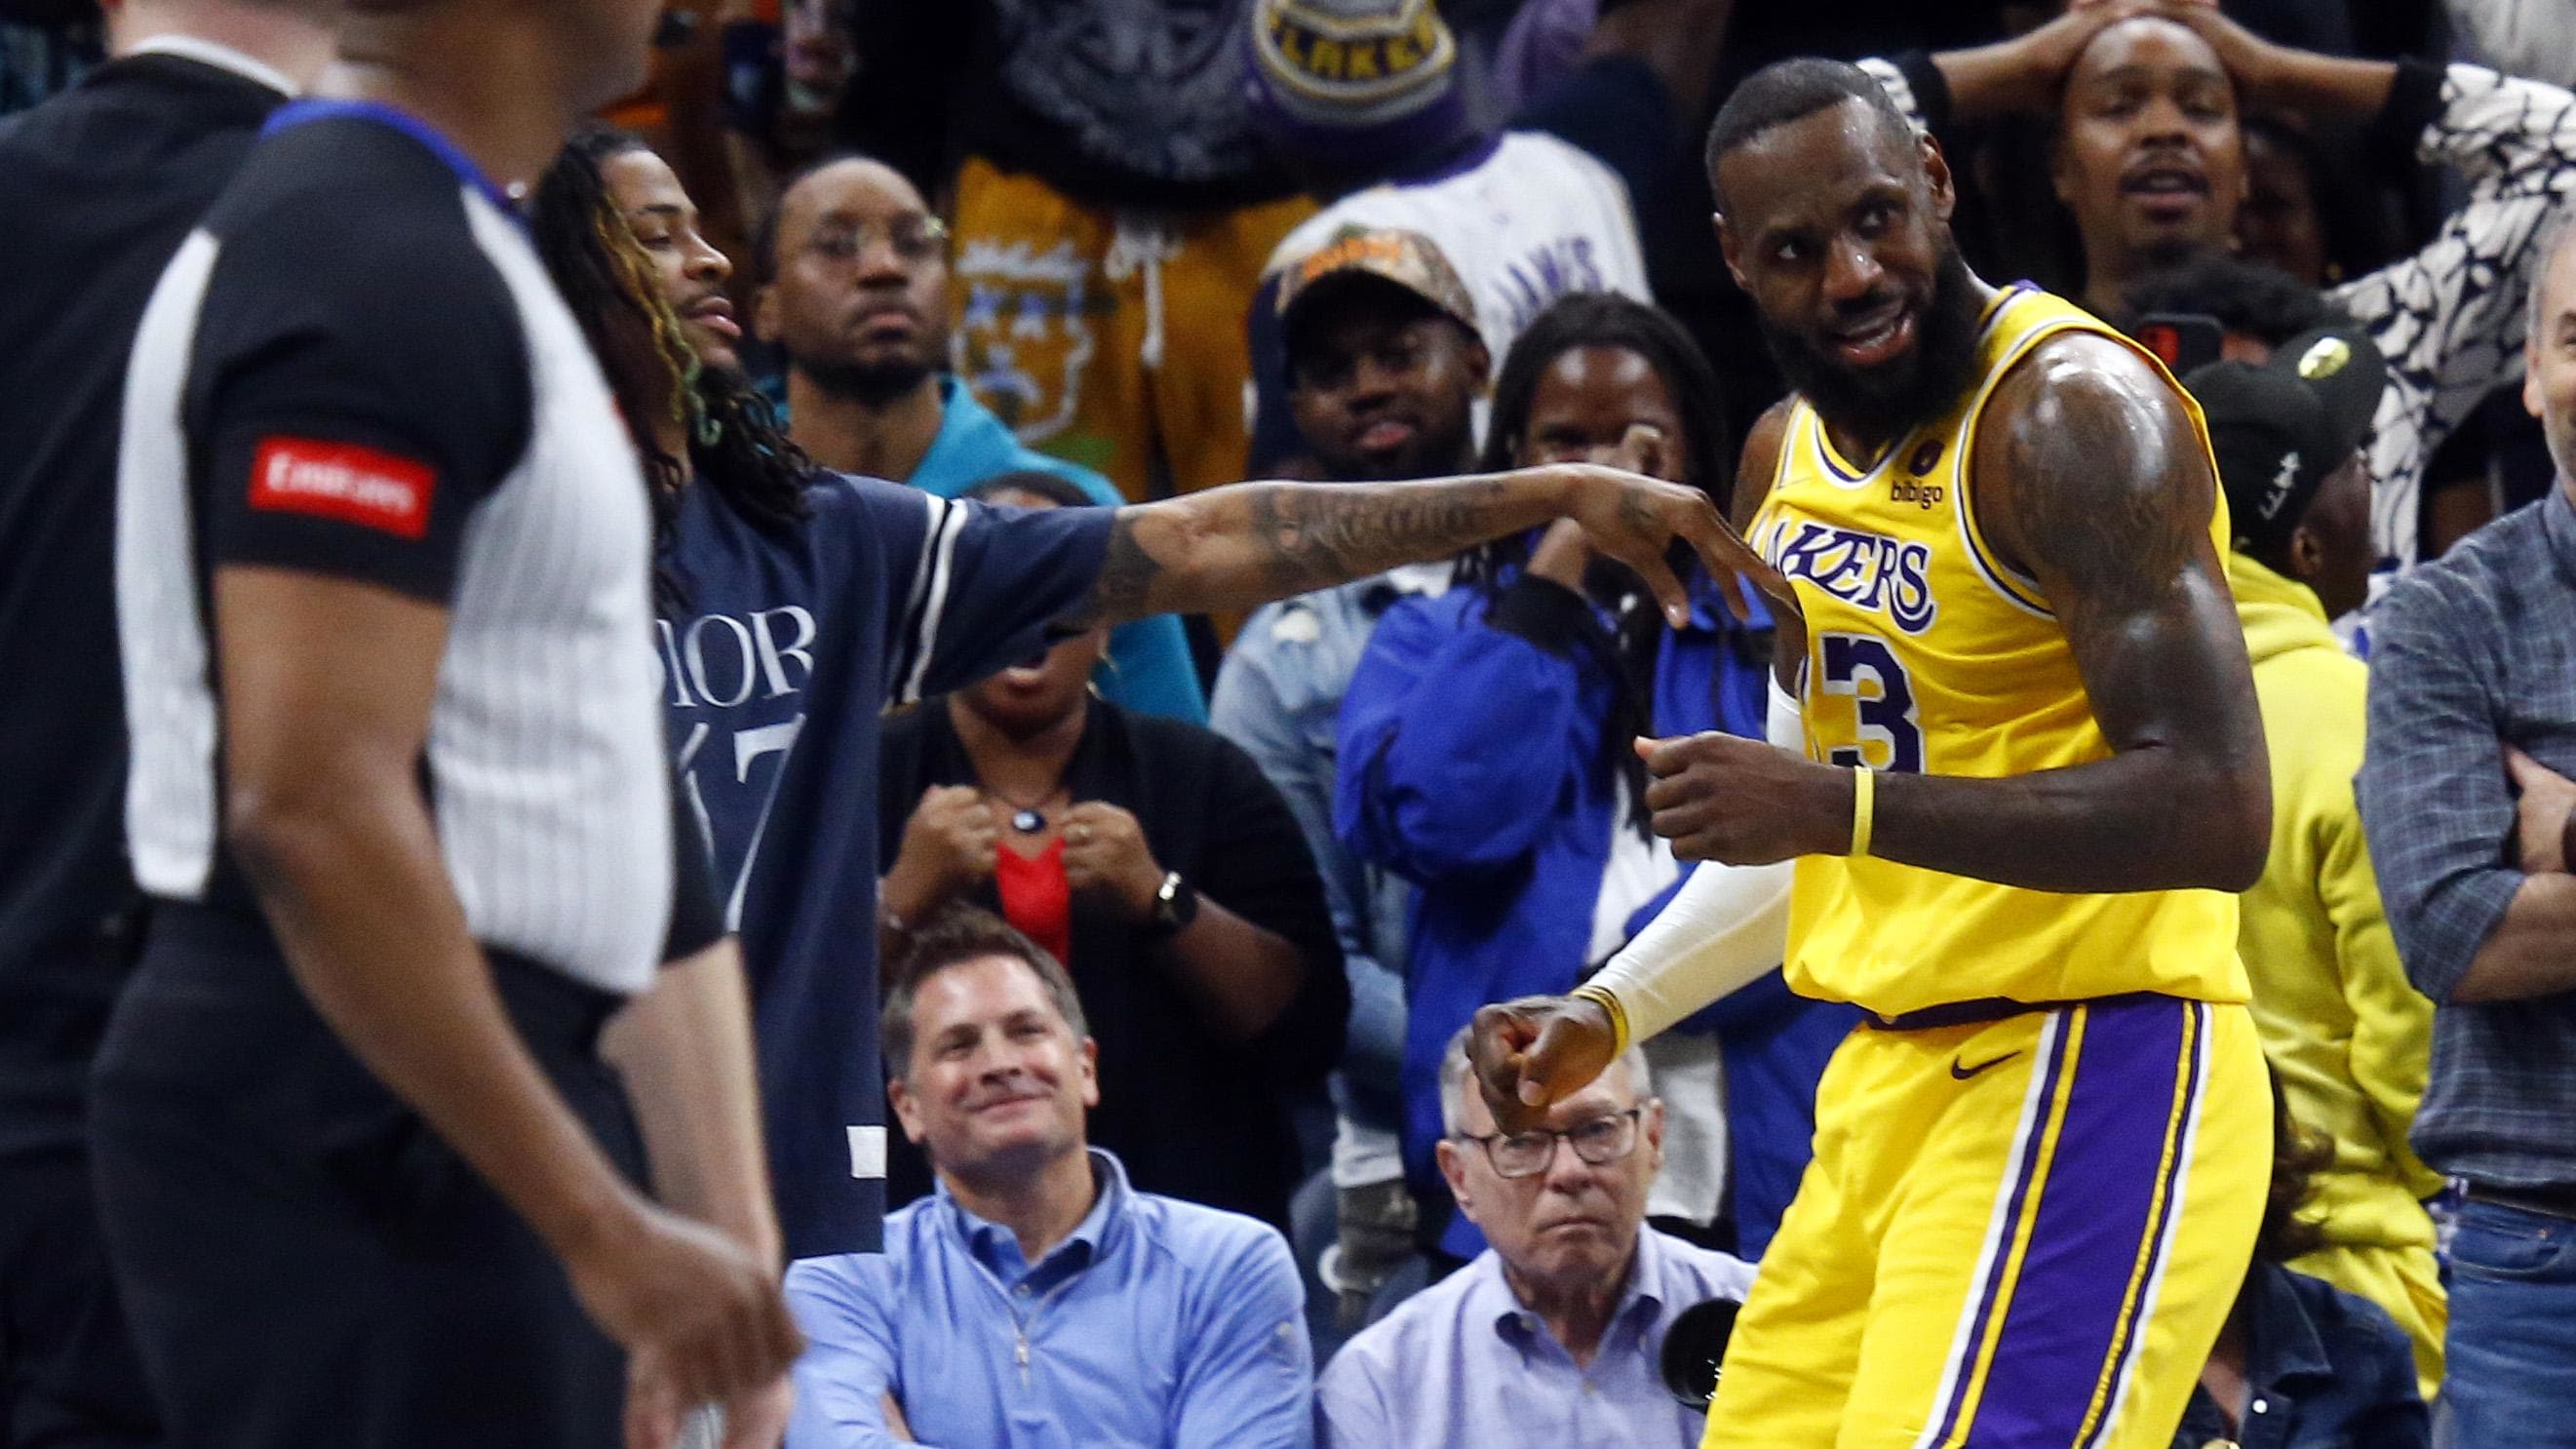 La NBA admet un nombre massif d’appels manqués entre les Lakers et les Grizzlies